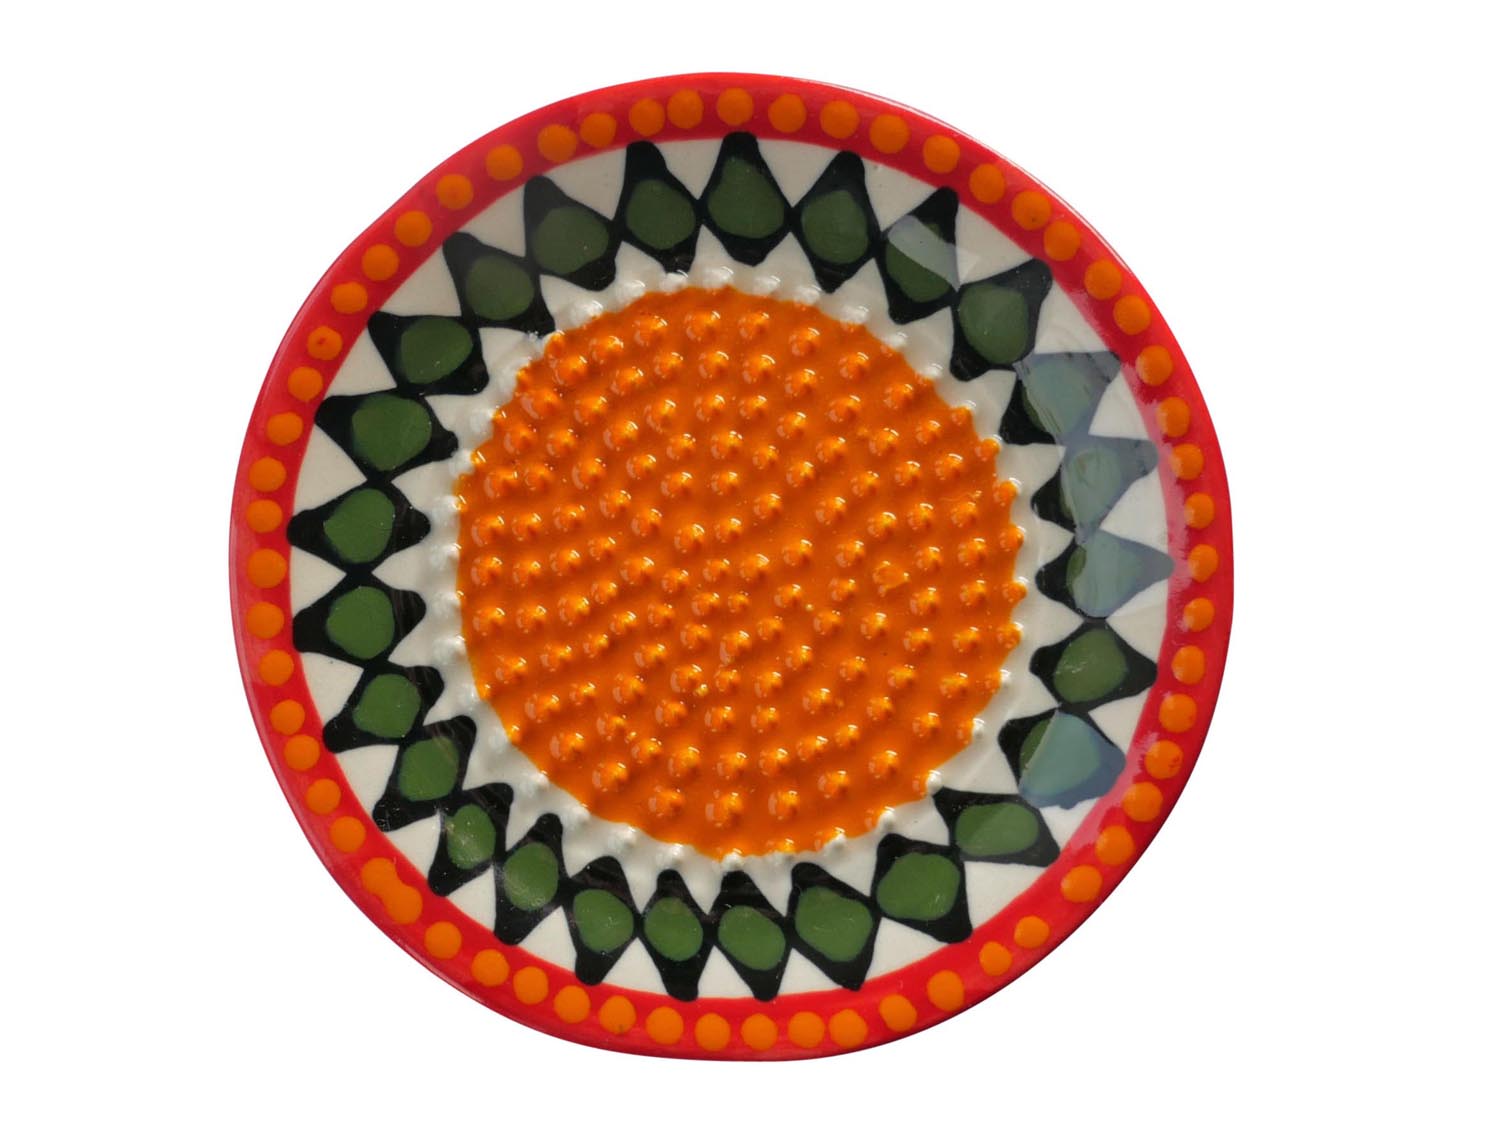 Keramikreibe - bemalte Reibe für Ingwer und Knoblauch - orange, grün